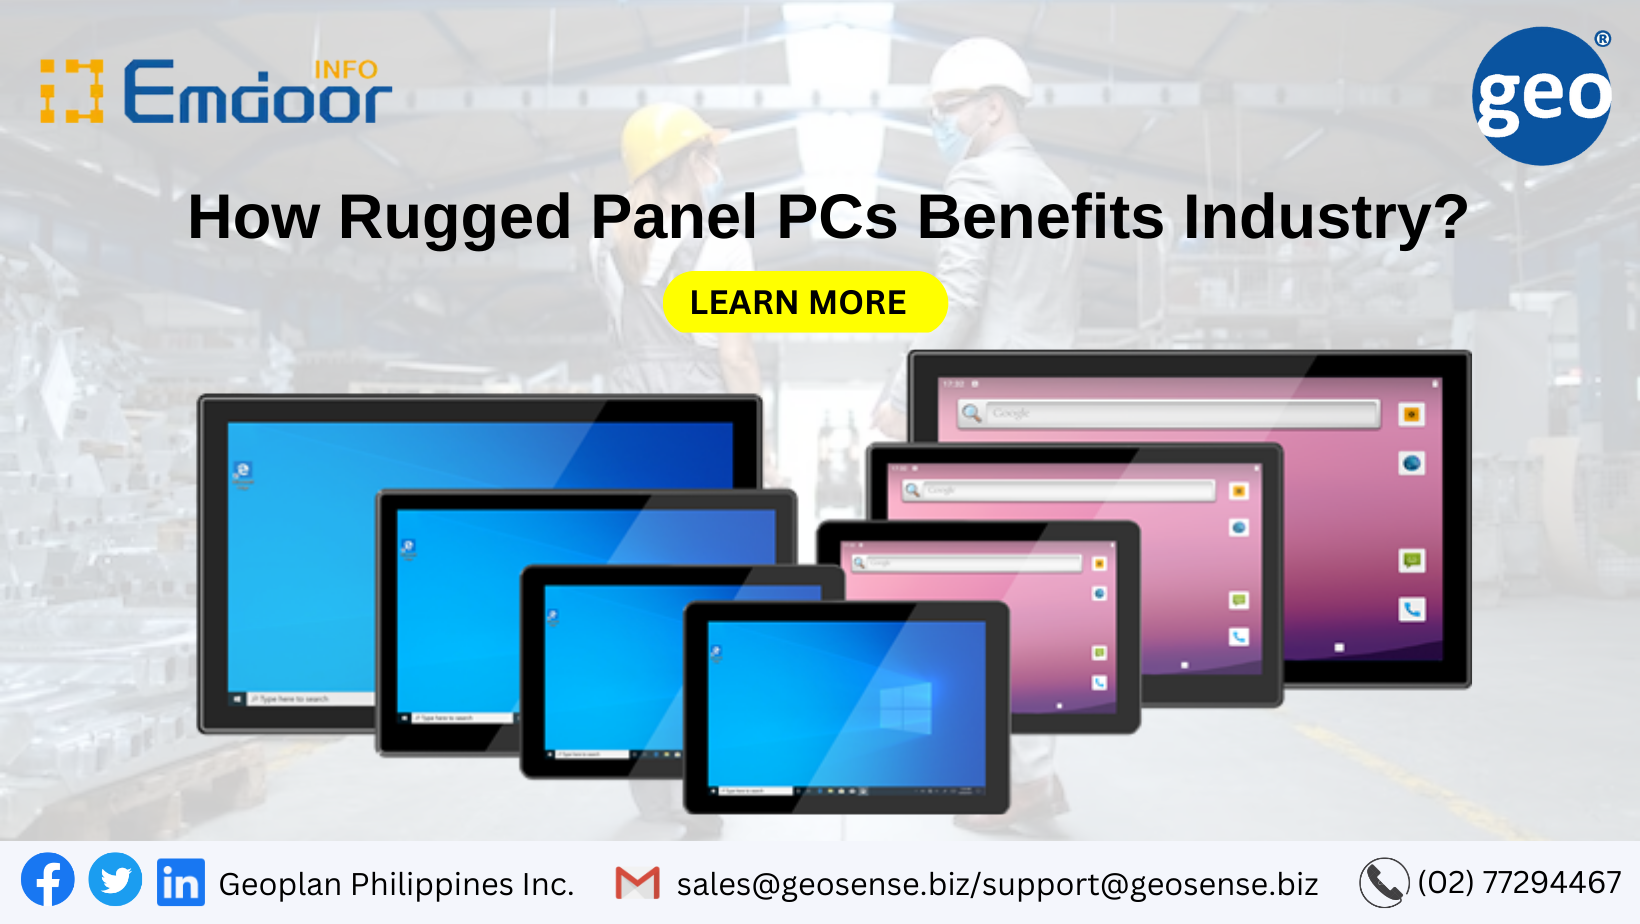 Emdoor: How Rugged Panel PCs Benefits Industry?